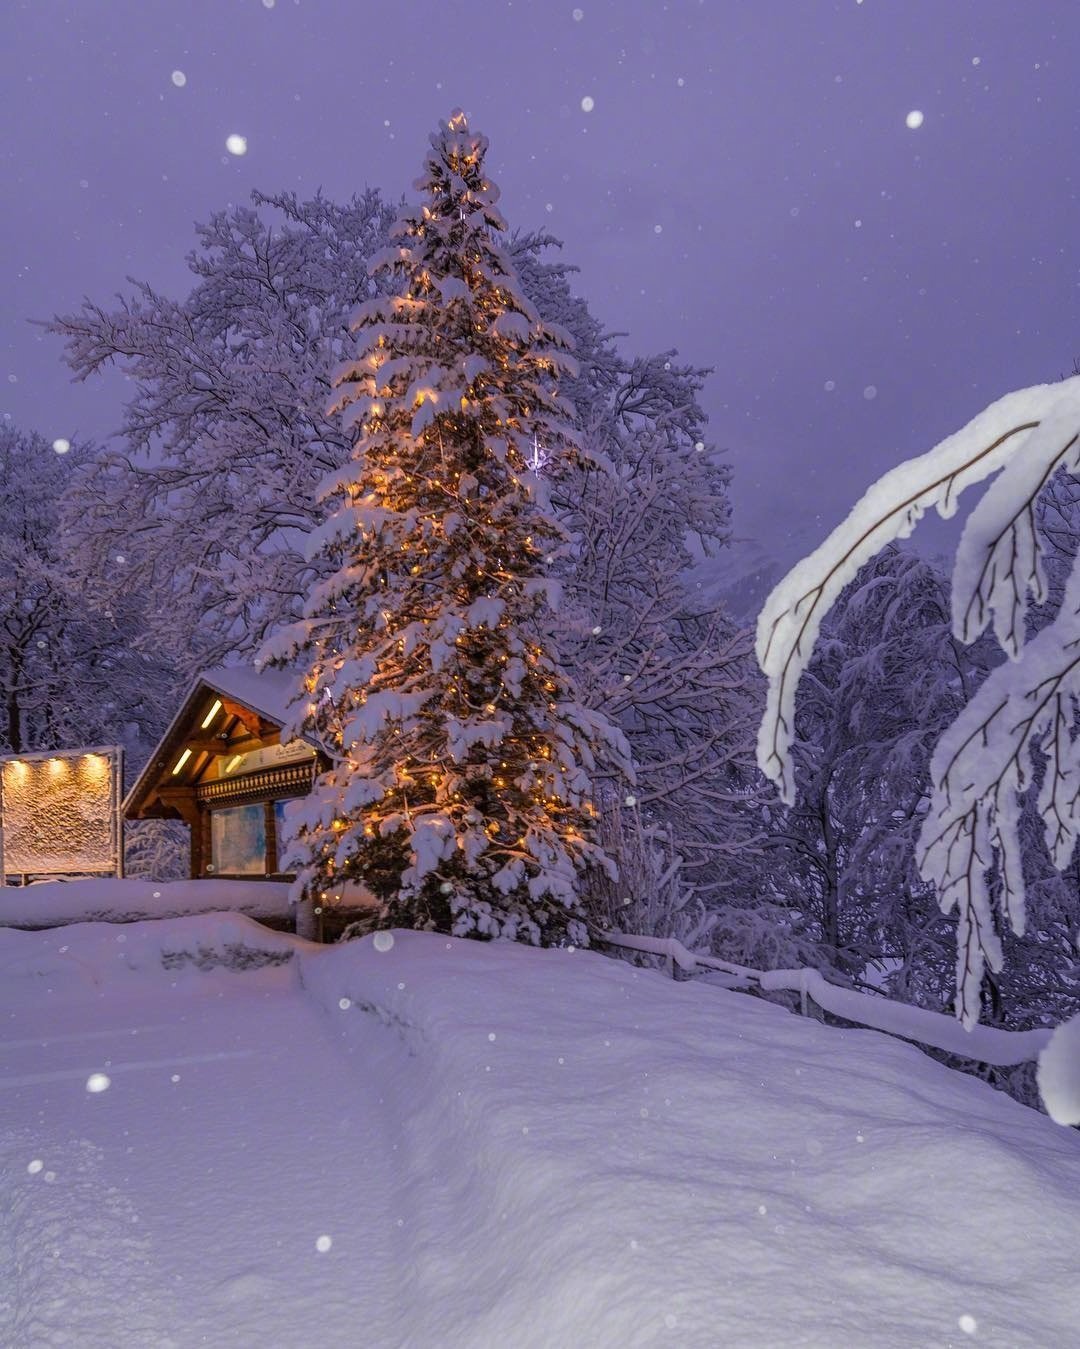 瑞士的雪中夜景,太美了,想和喜欢的人去过圣诞